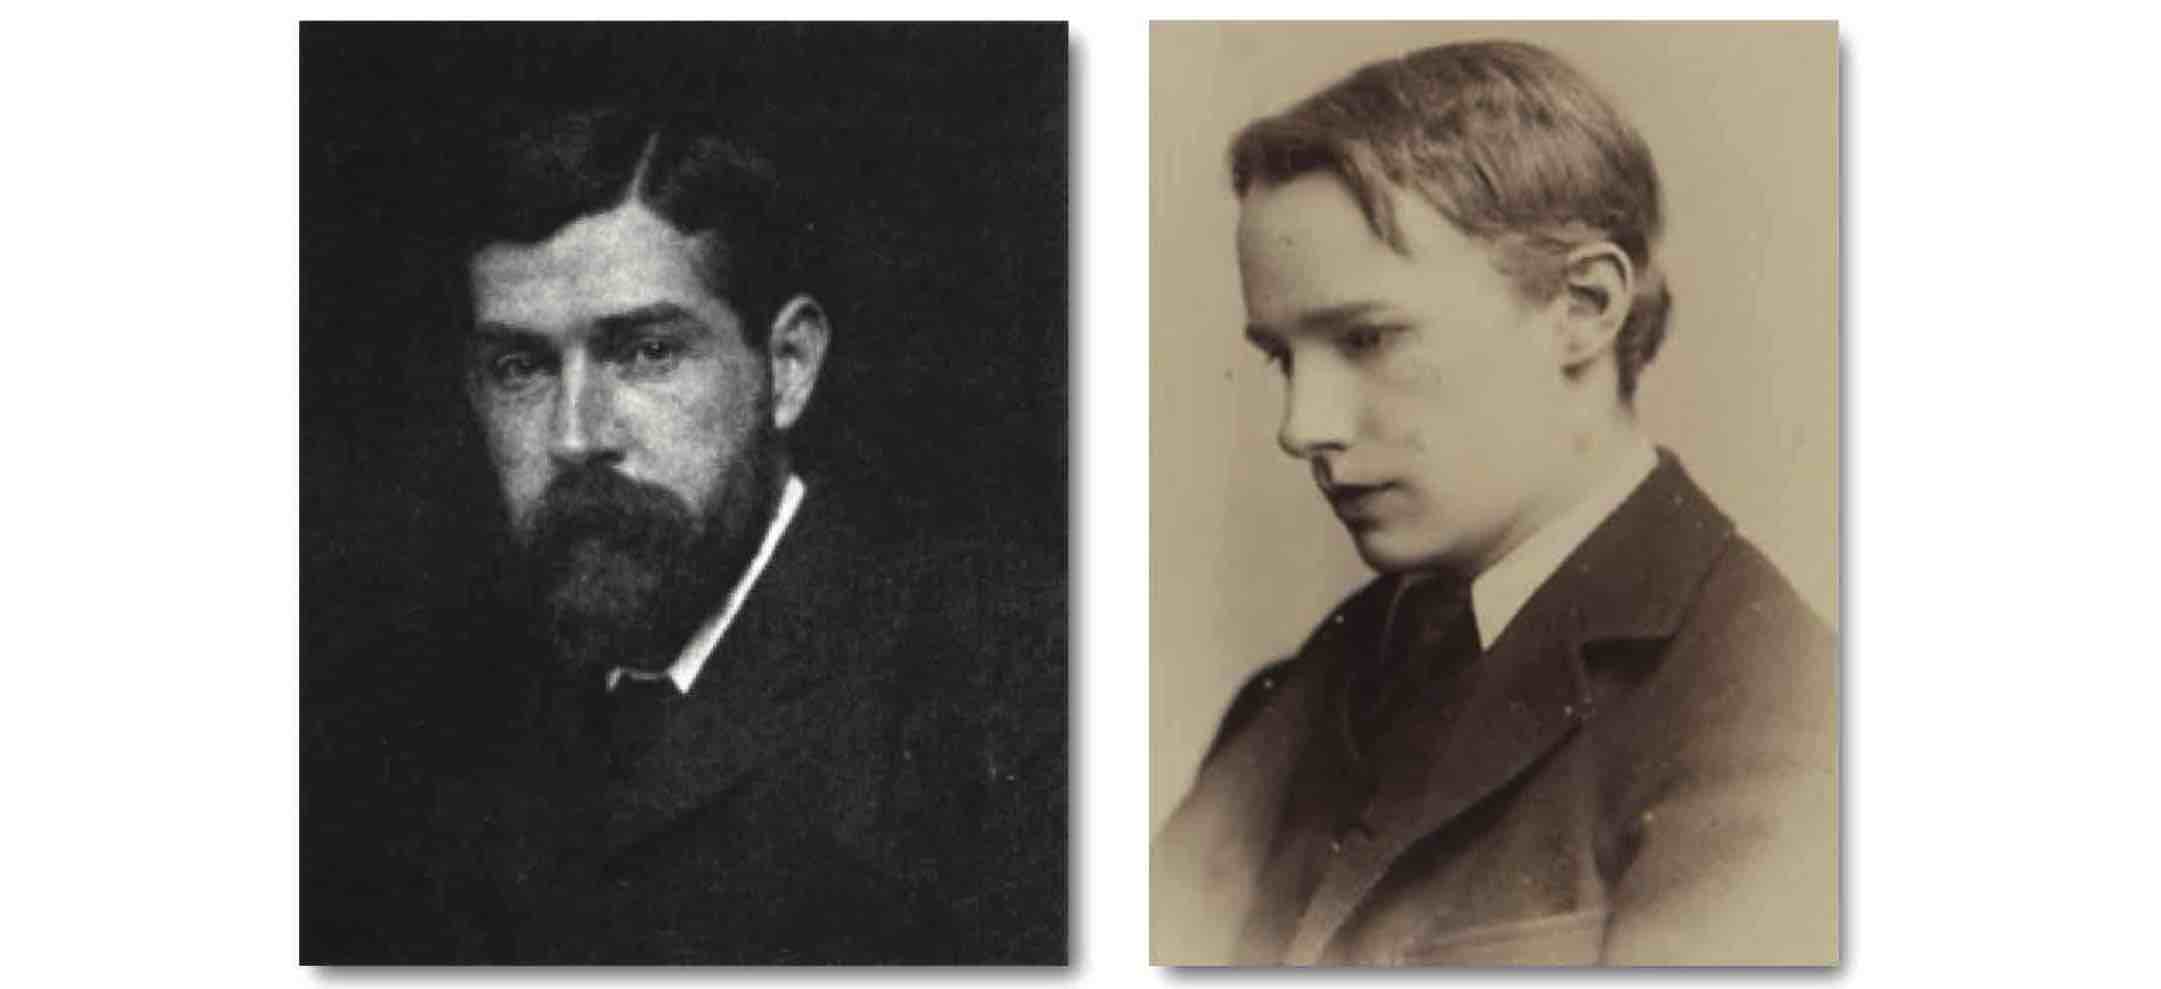 Bradley e Moore: una storia diversa sulla nascita della filosofia analitica